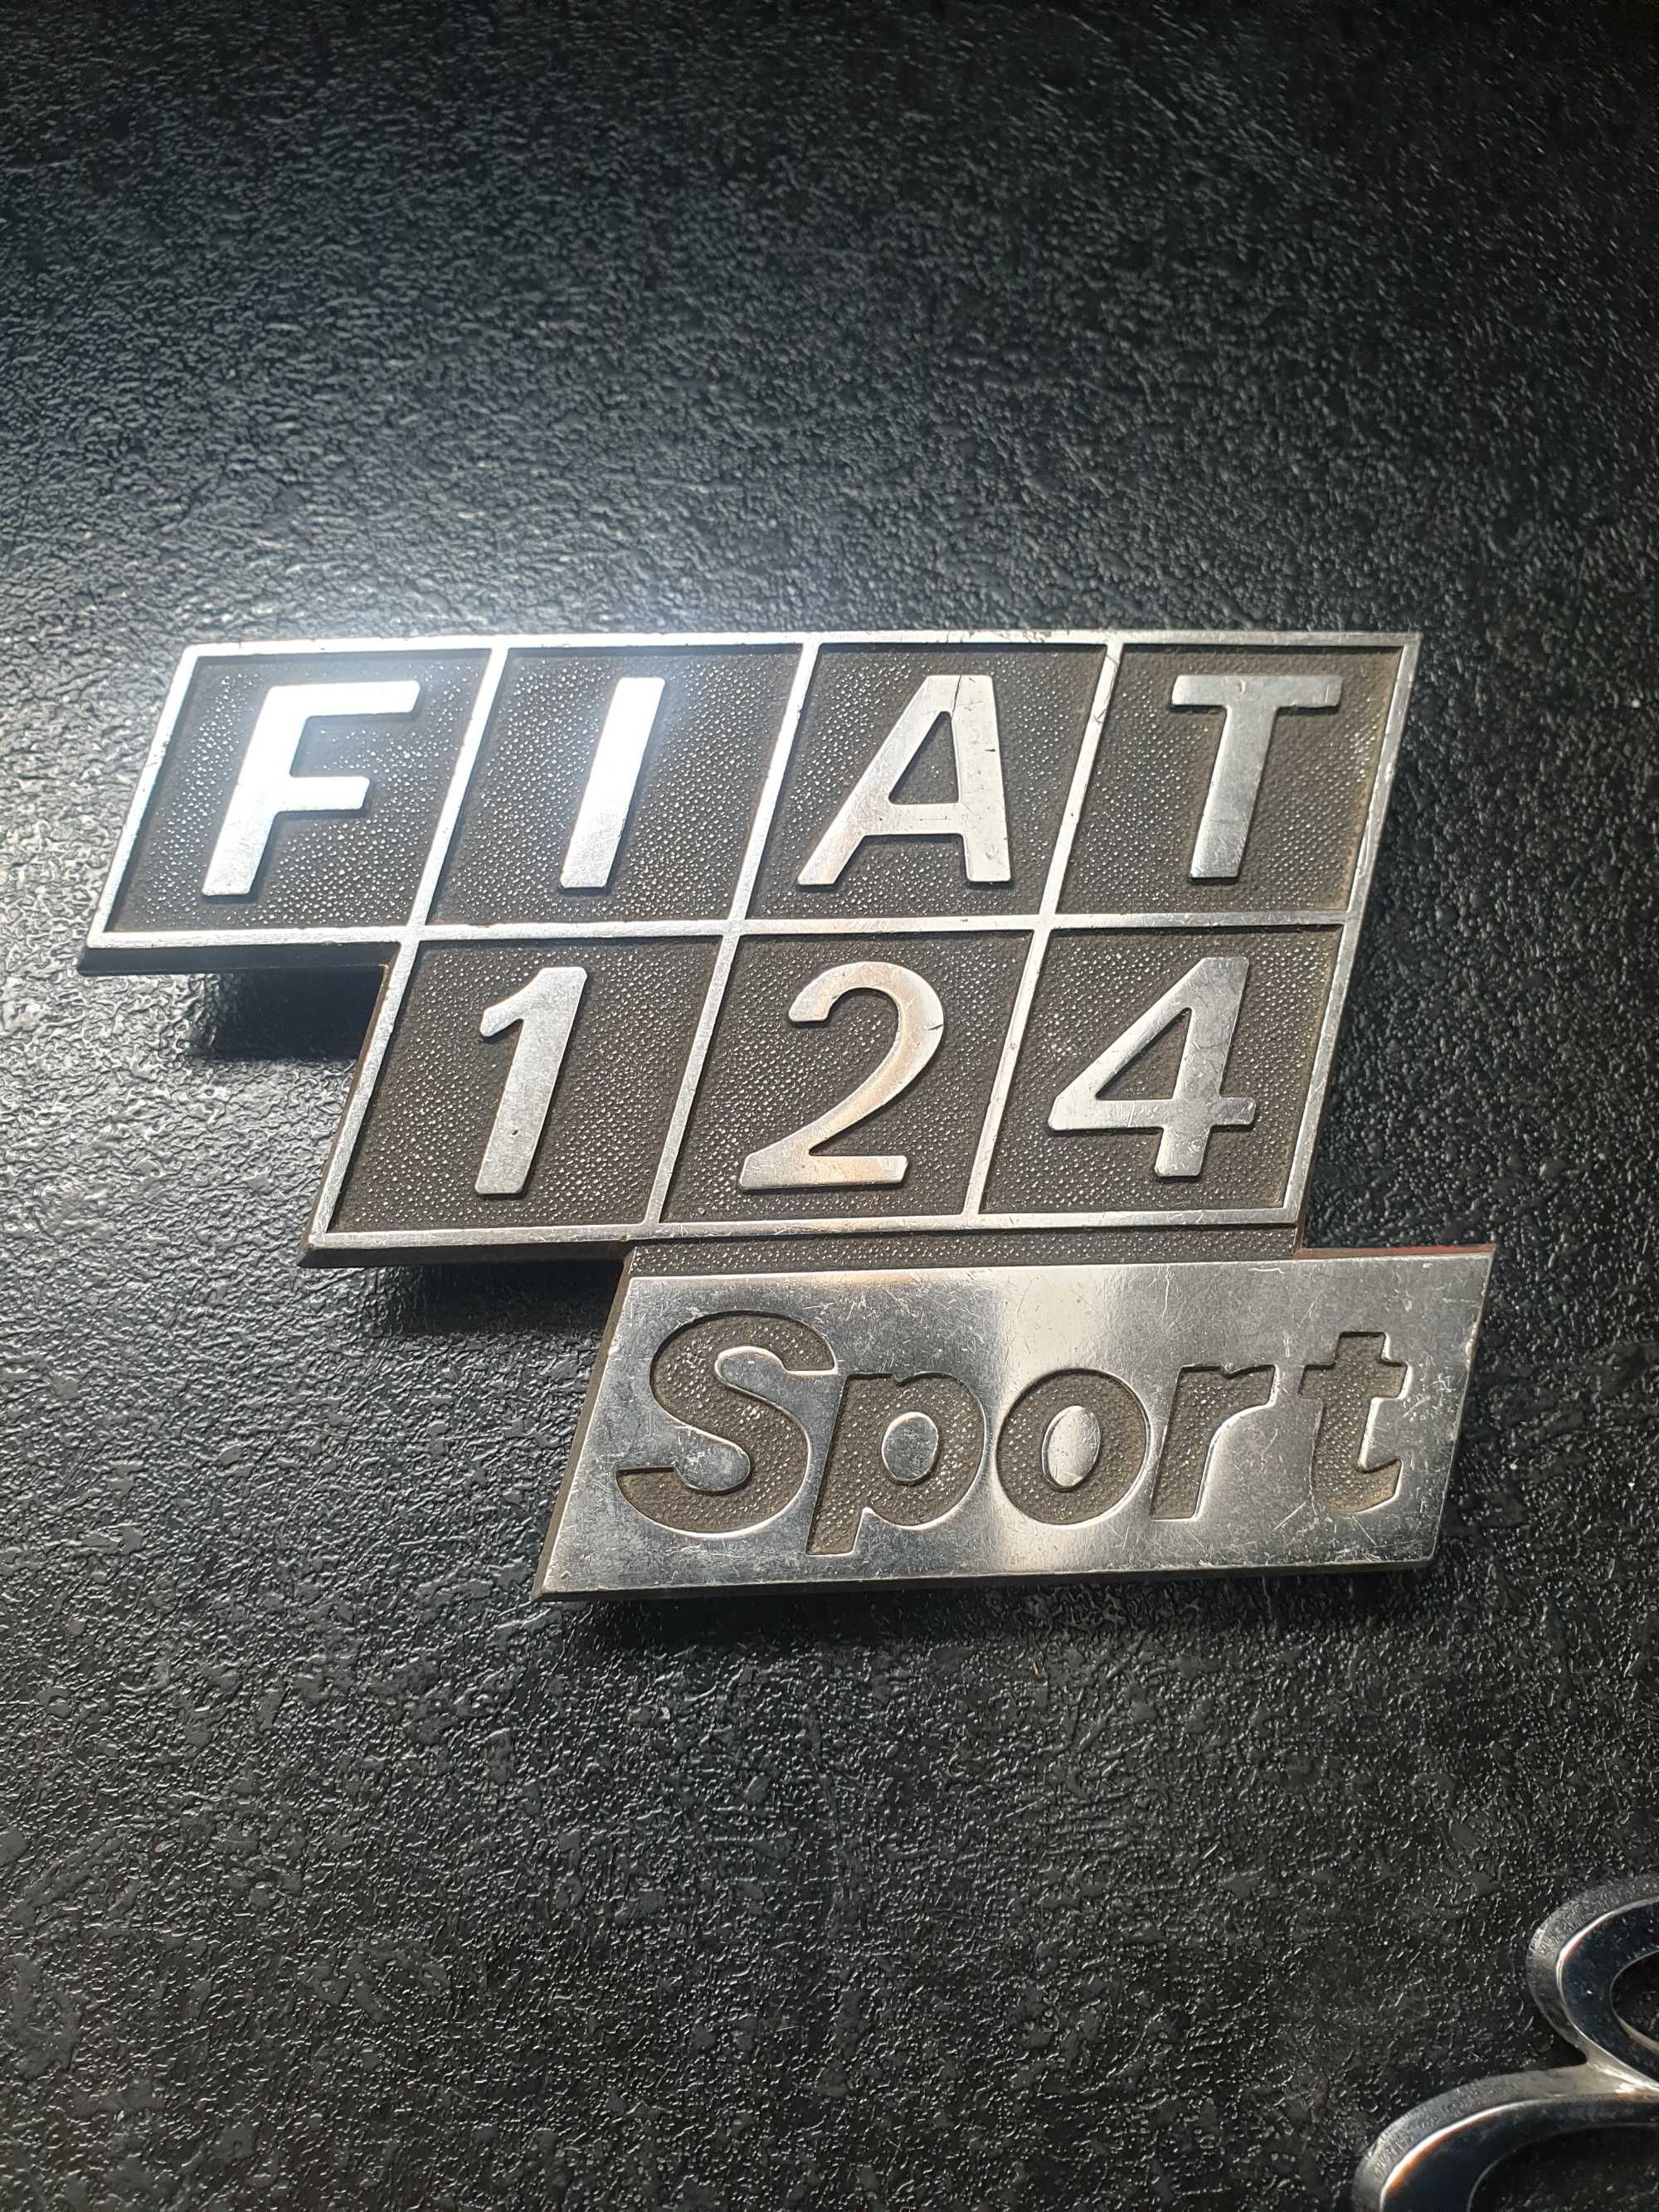 Znaczek Fiat 124 Sport Emblemat